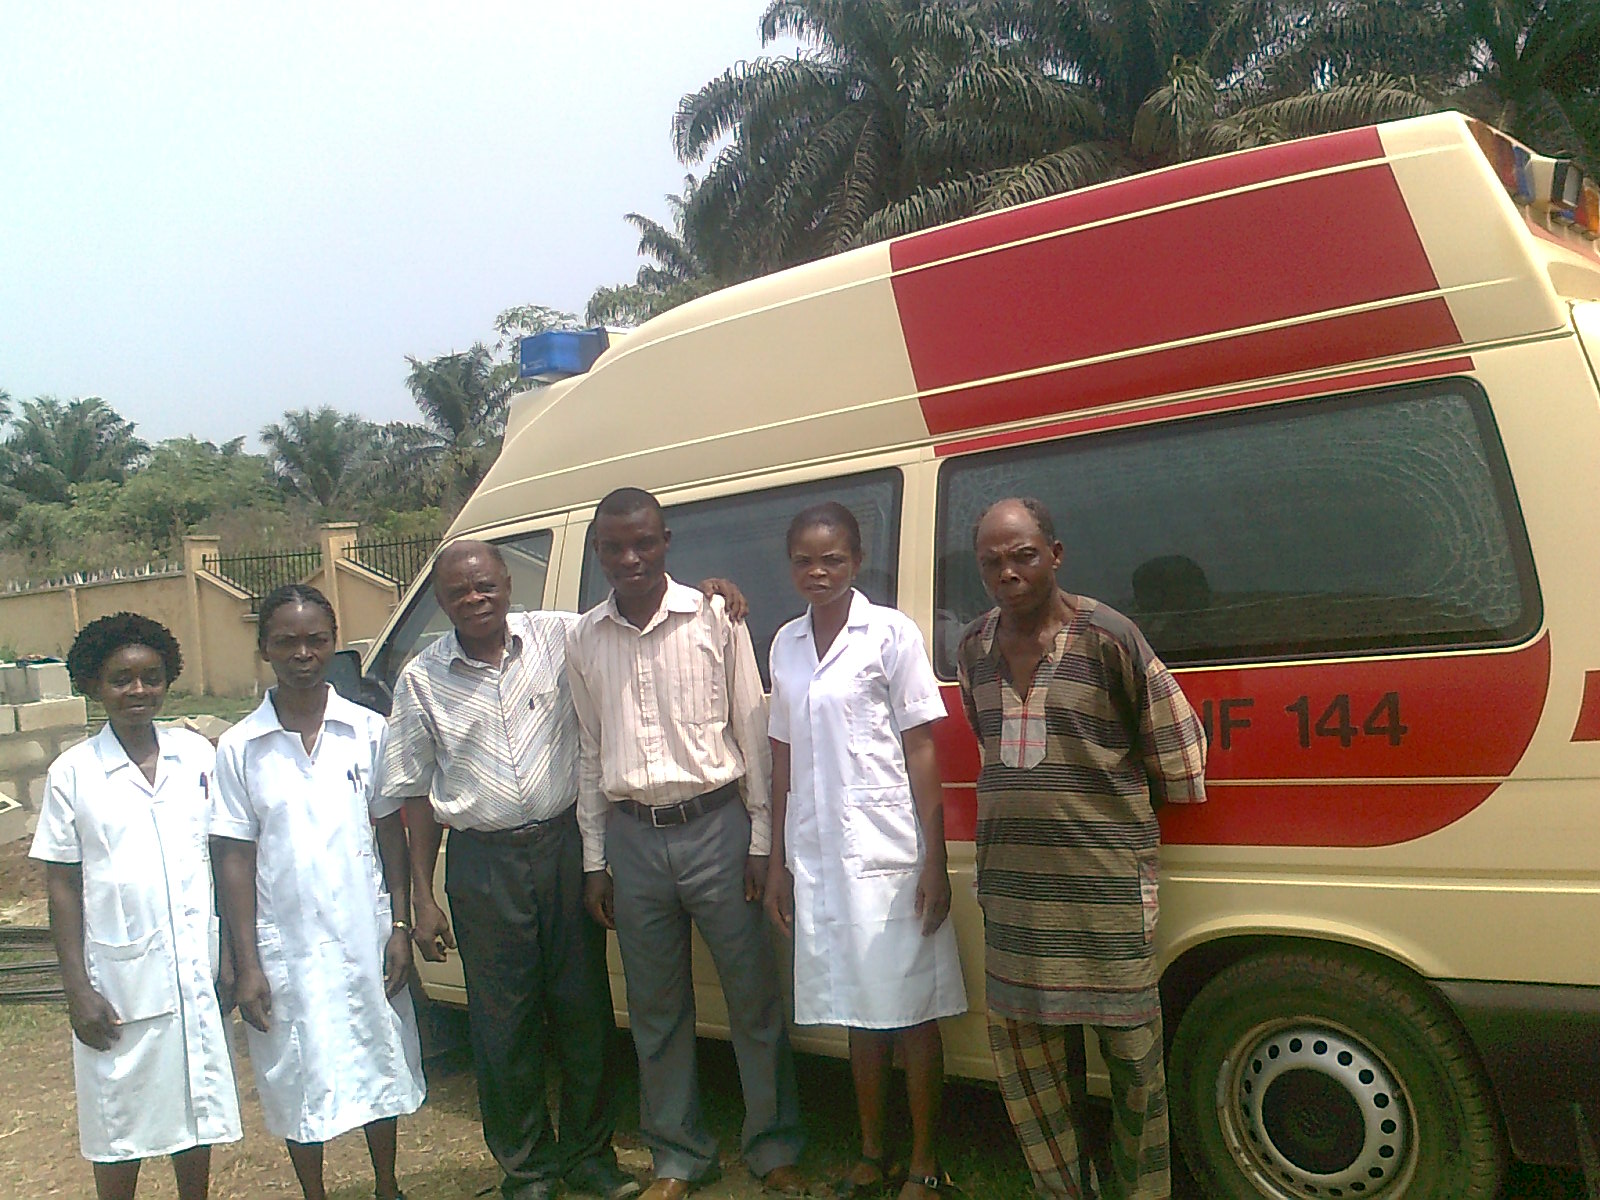 Bild von Ärzten und Krankenschwestern in Nigeria, die vor einem von HIFA gespendeten Krankentransportwagen posieren. Die mobile Krankenstation soll dazu beitragen, die Gesundheitsversorgung in ländlichen Gebieten in Nigeria zu verbessern.